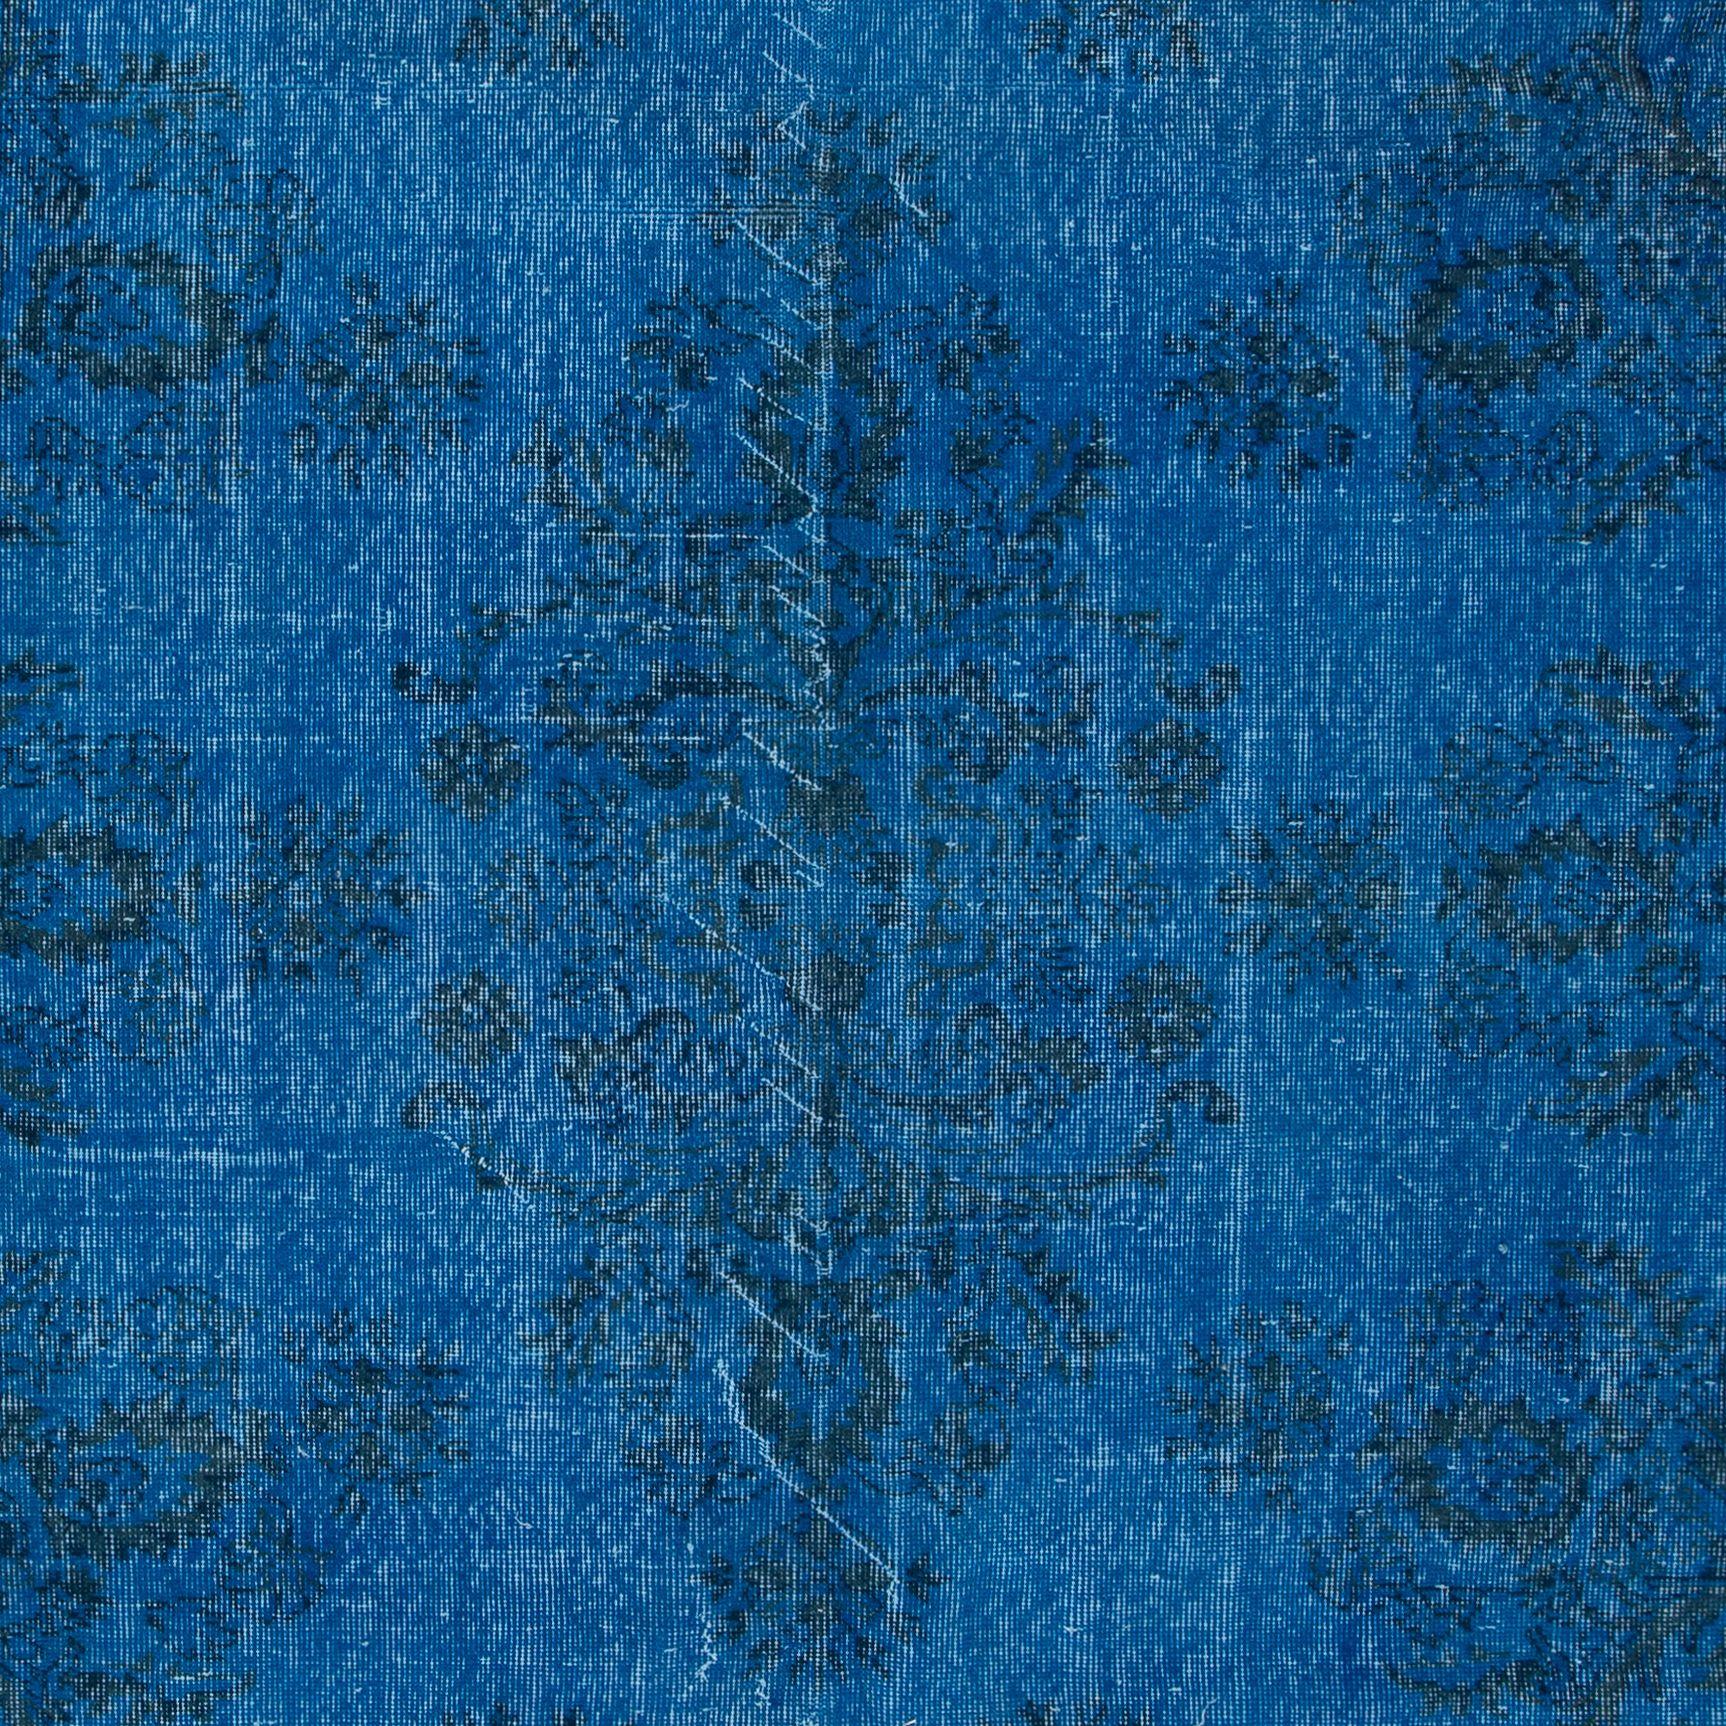 Hand-Woven 6.7x10.5 Ft Blue Modern Area Rug, Overdyed Carpet, Handmade Living Room Carpet For Sale